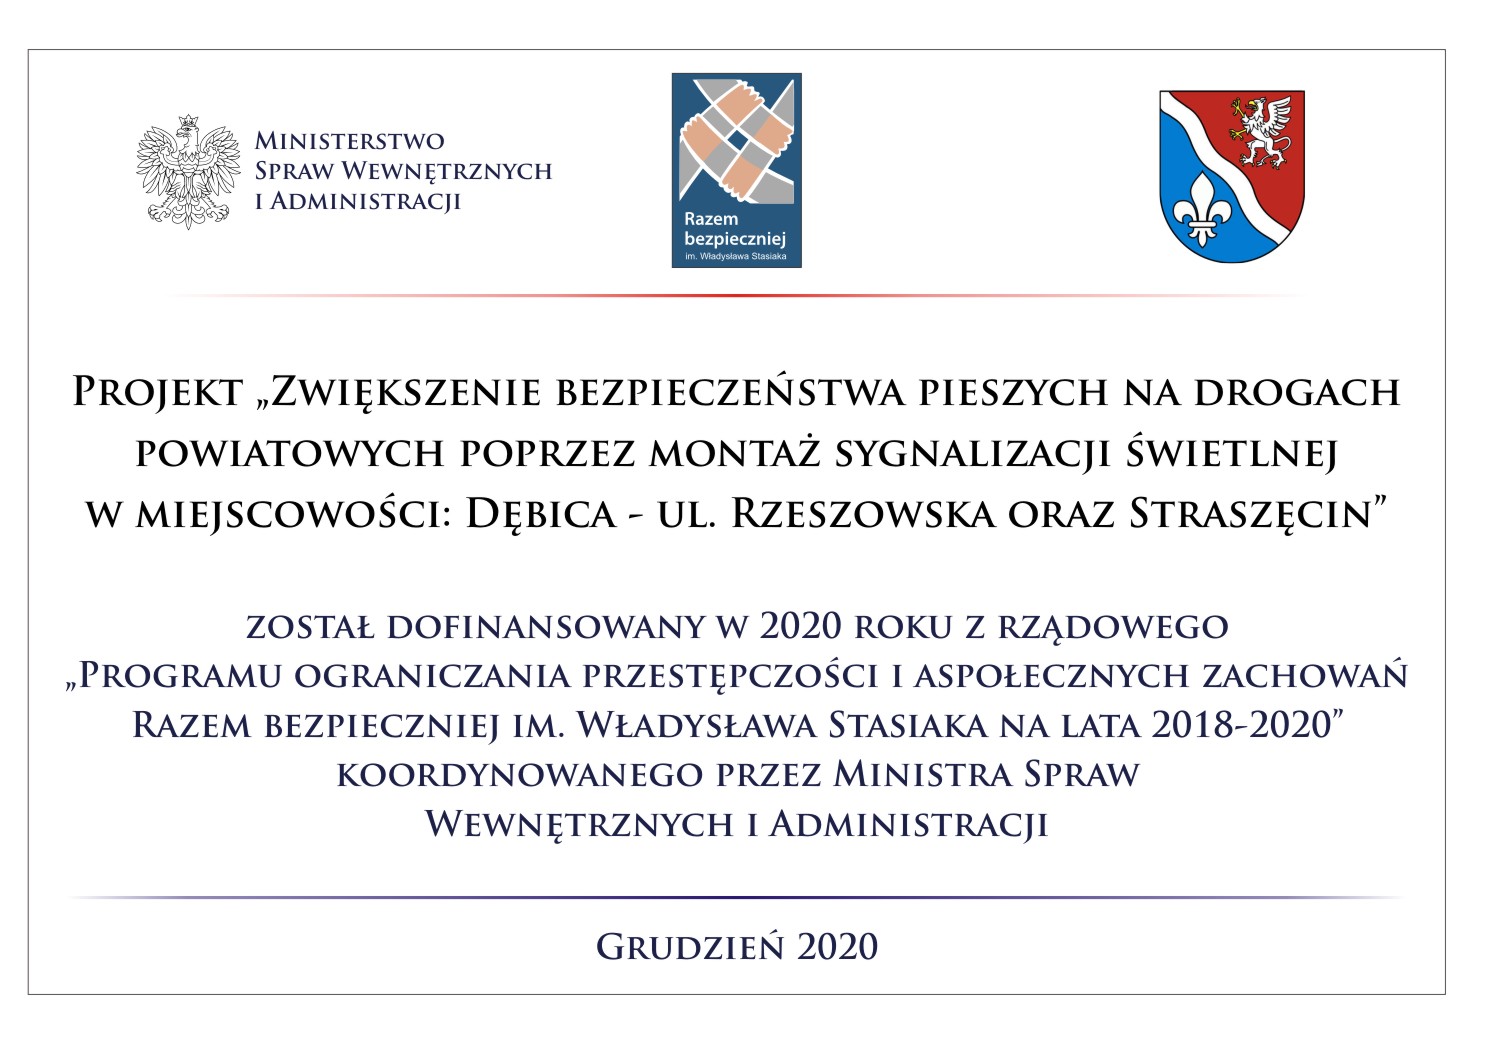 Zwiększenie bezpieczeństwa pieszych na drogach powiatowych poprzez montaż sygnalizacji świetlnej w miejscowości: Dębica – ul. Rzeszowska oraz Straszęcin